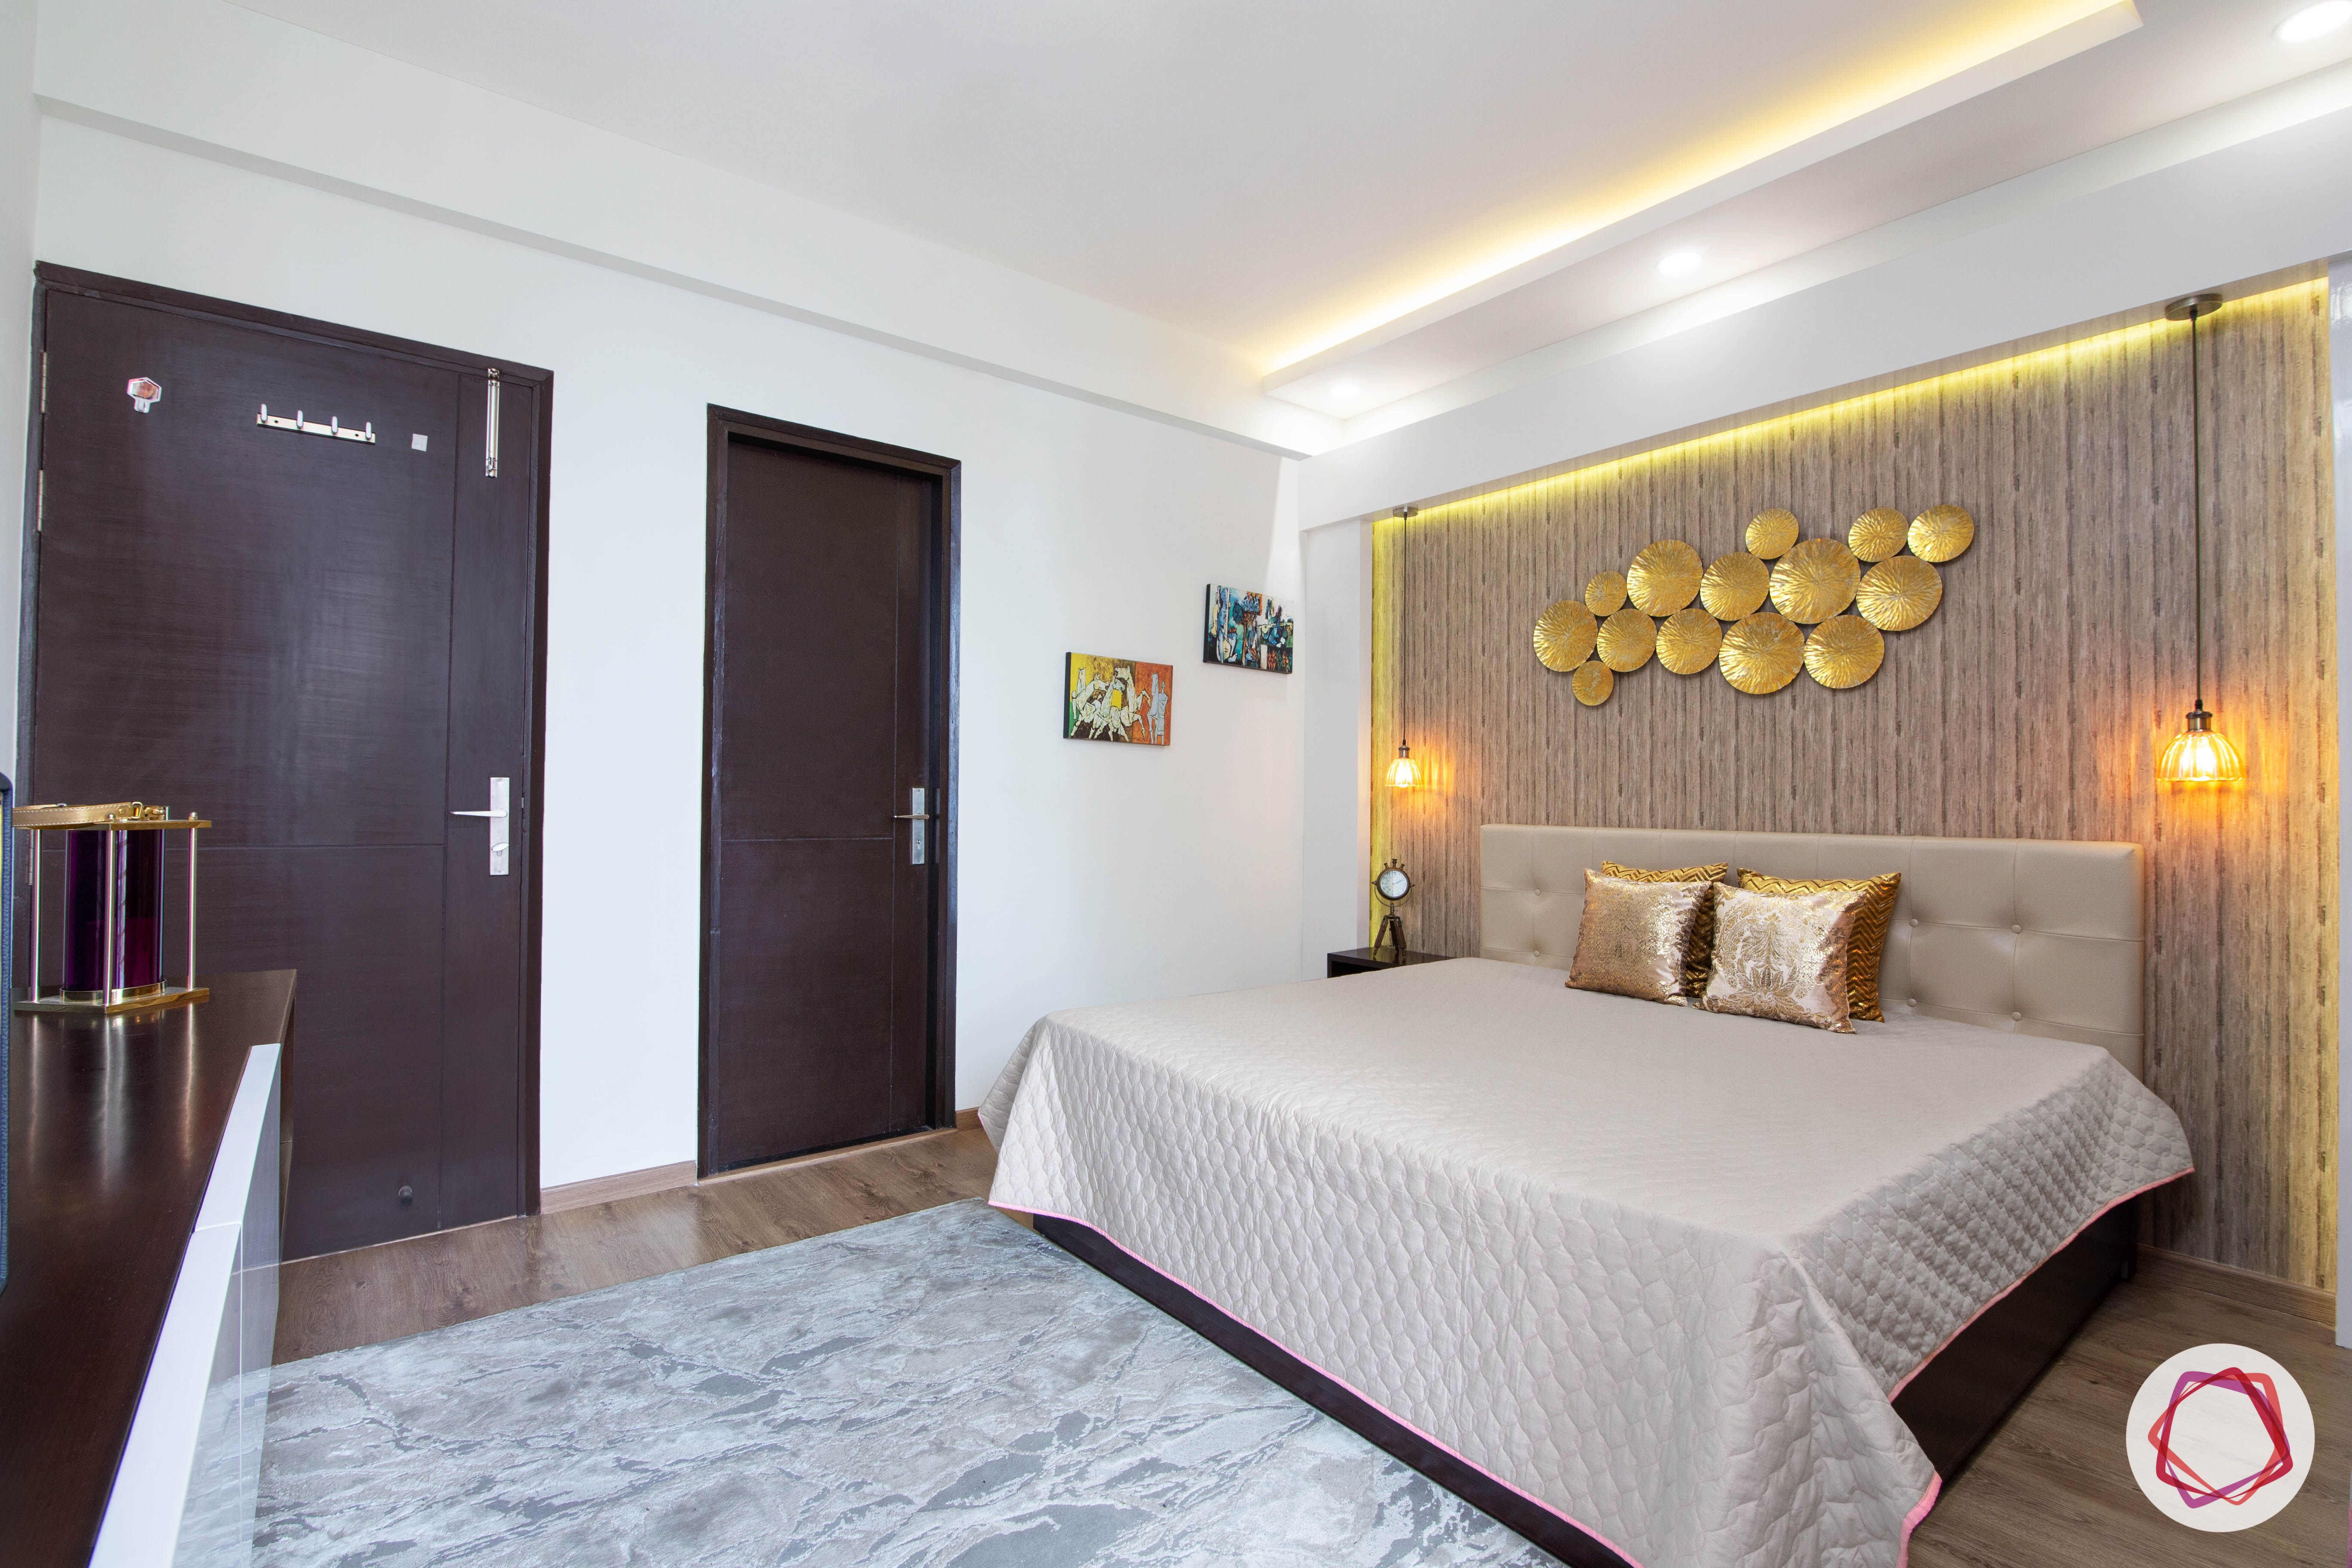 beautiful home design bedroom wooden wallpaper